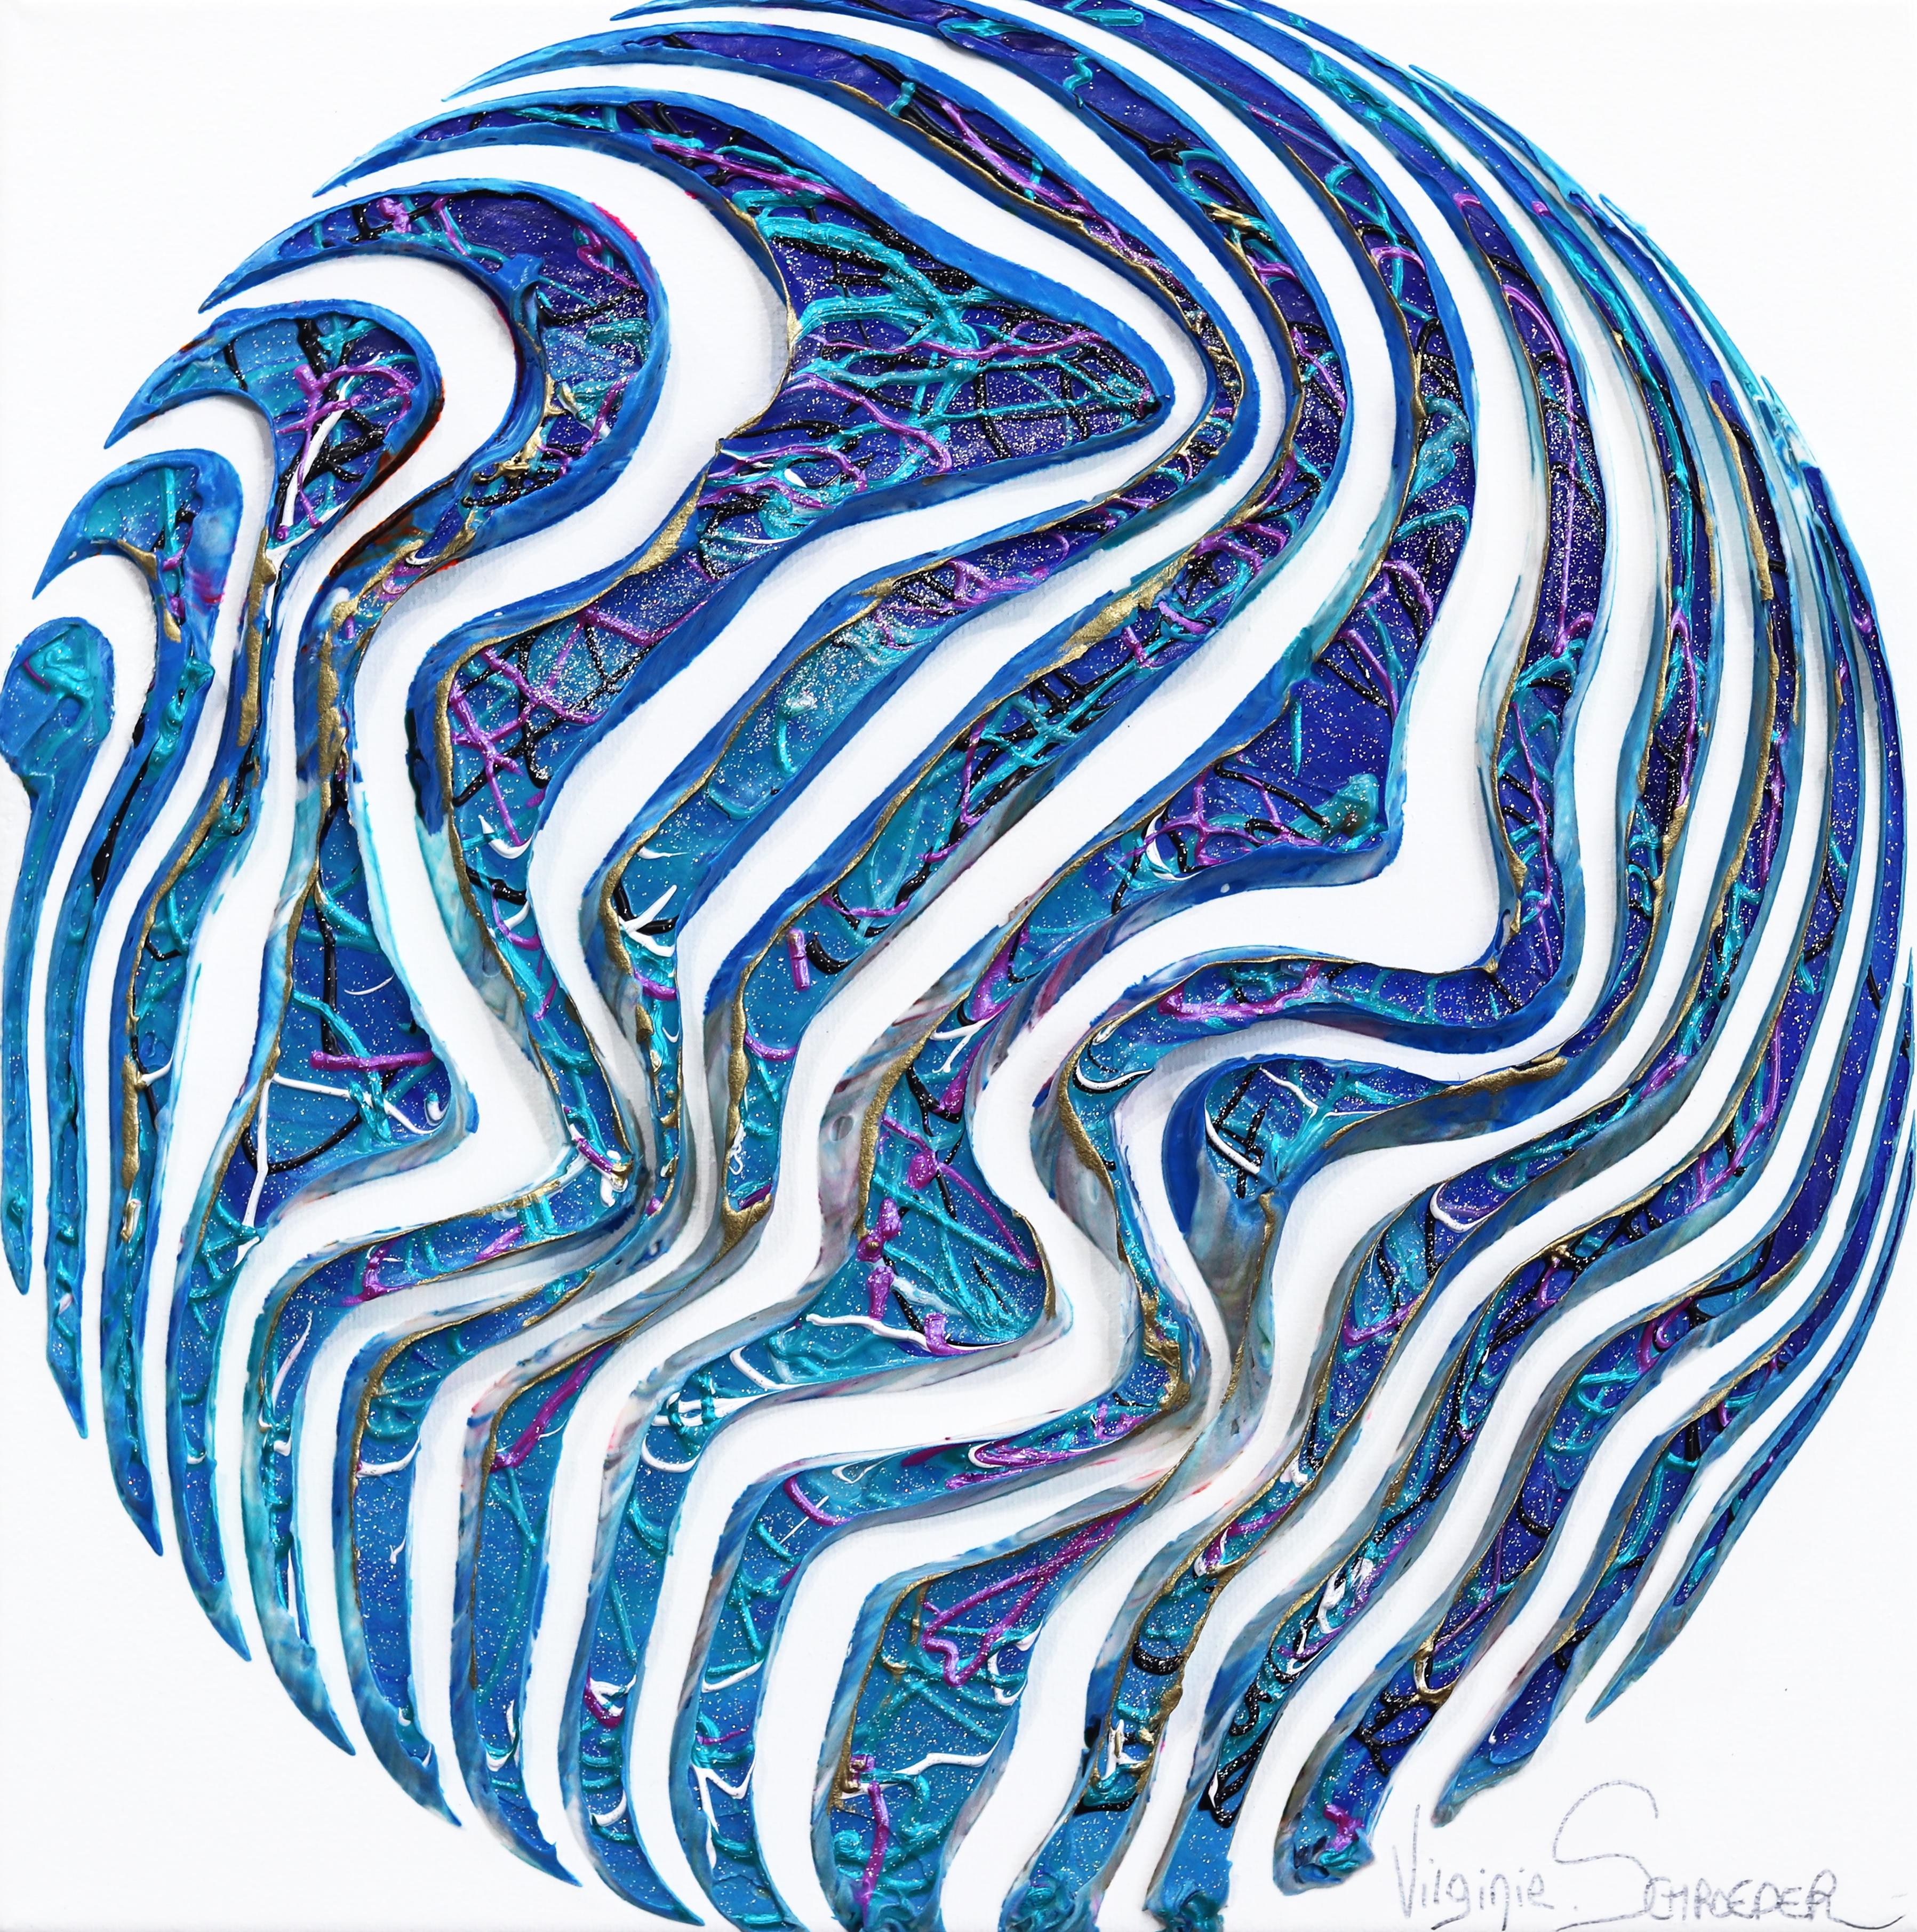 The Waves and the Life - Minimalistisches abstraktes 3D-Gemälde mit strukturiertem blauem Kreis